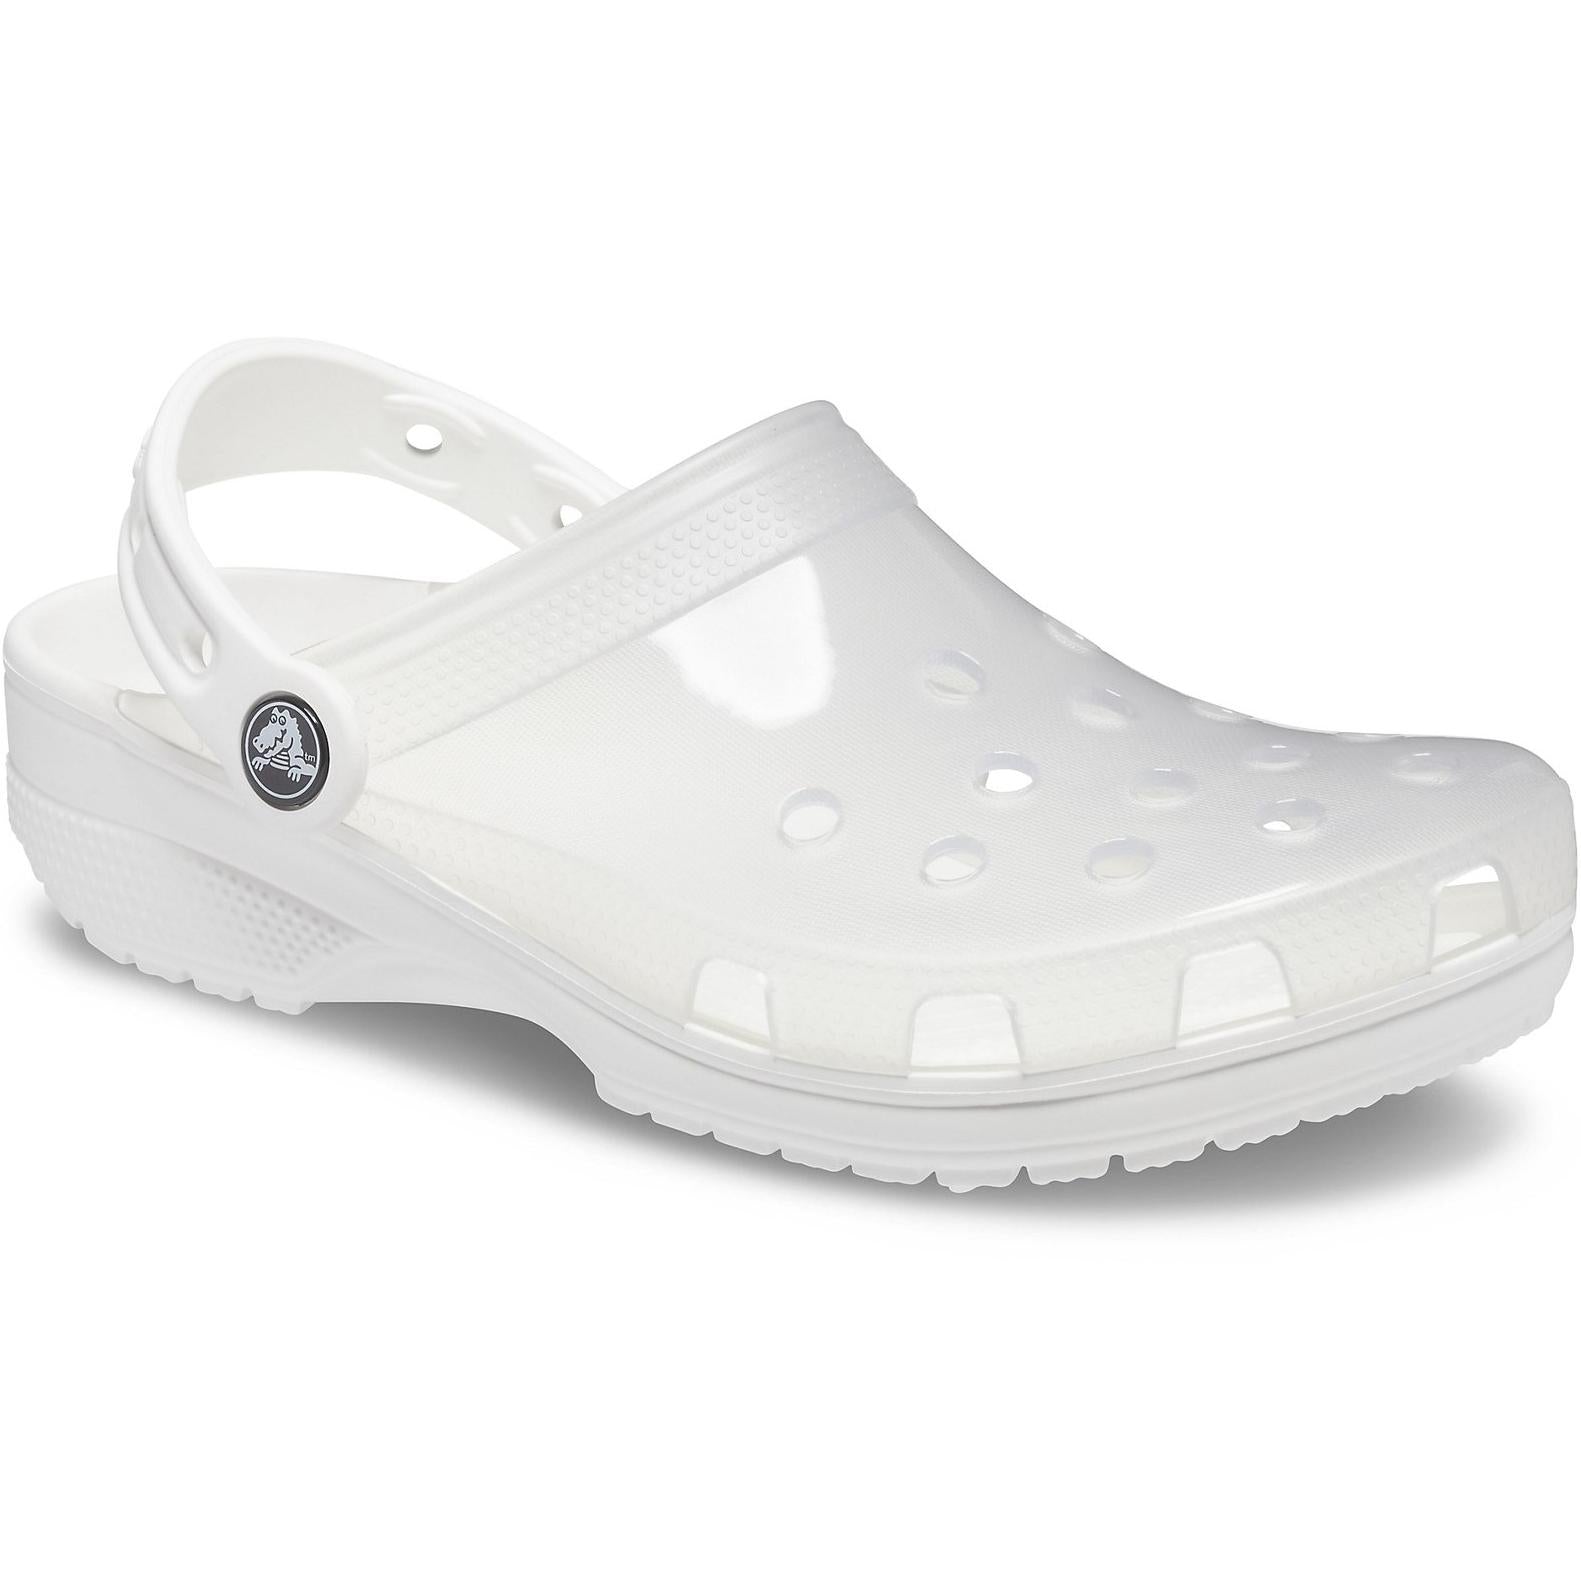 Crocs Translucent Clog Sandals